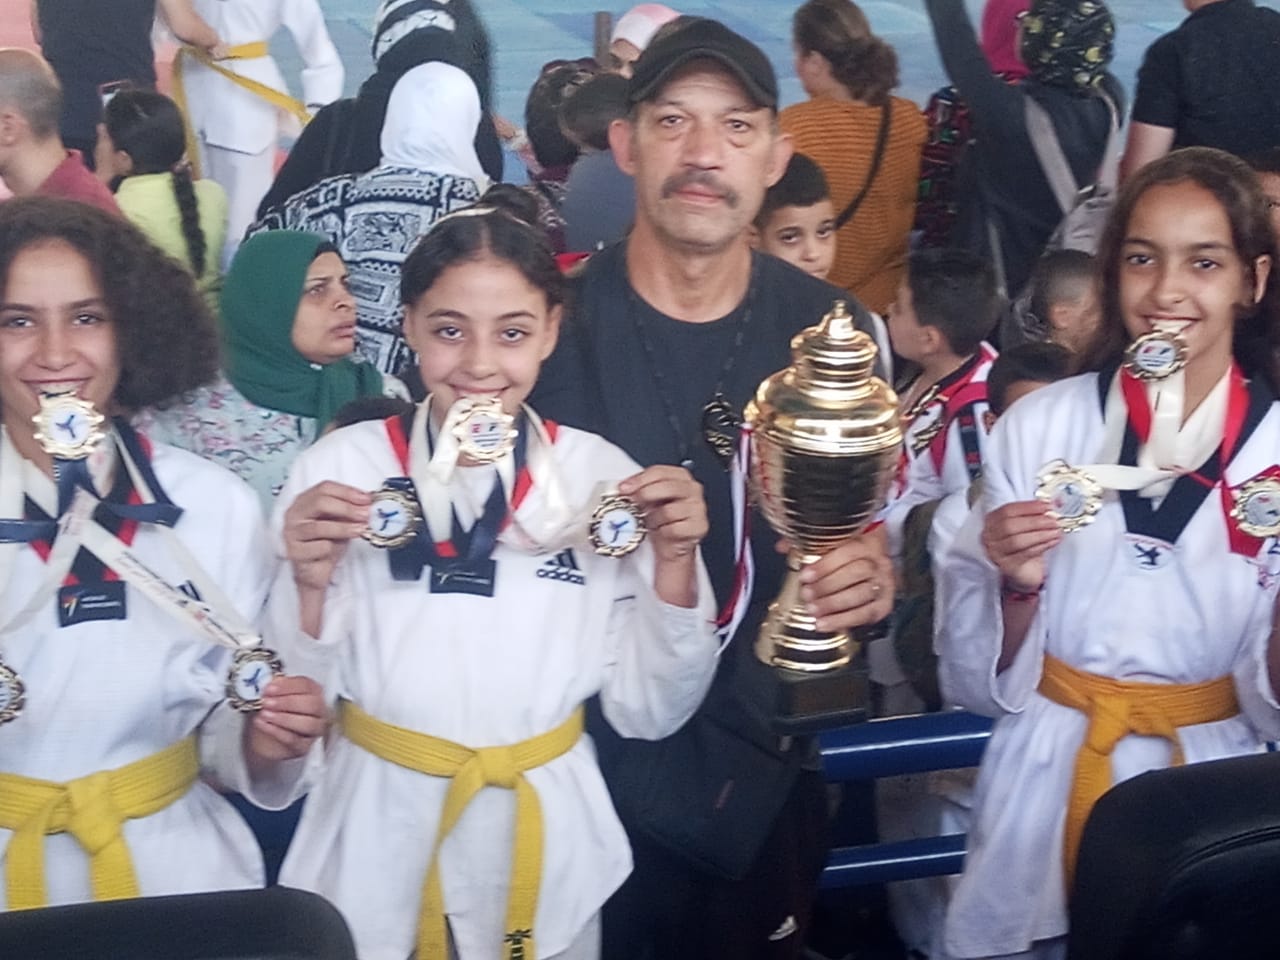 أبطال تايكوندو مطوبس يحصدون كأس بطولة وسط الدلتا للبومزا